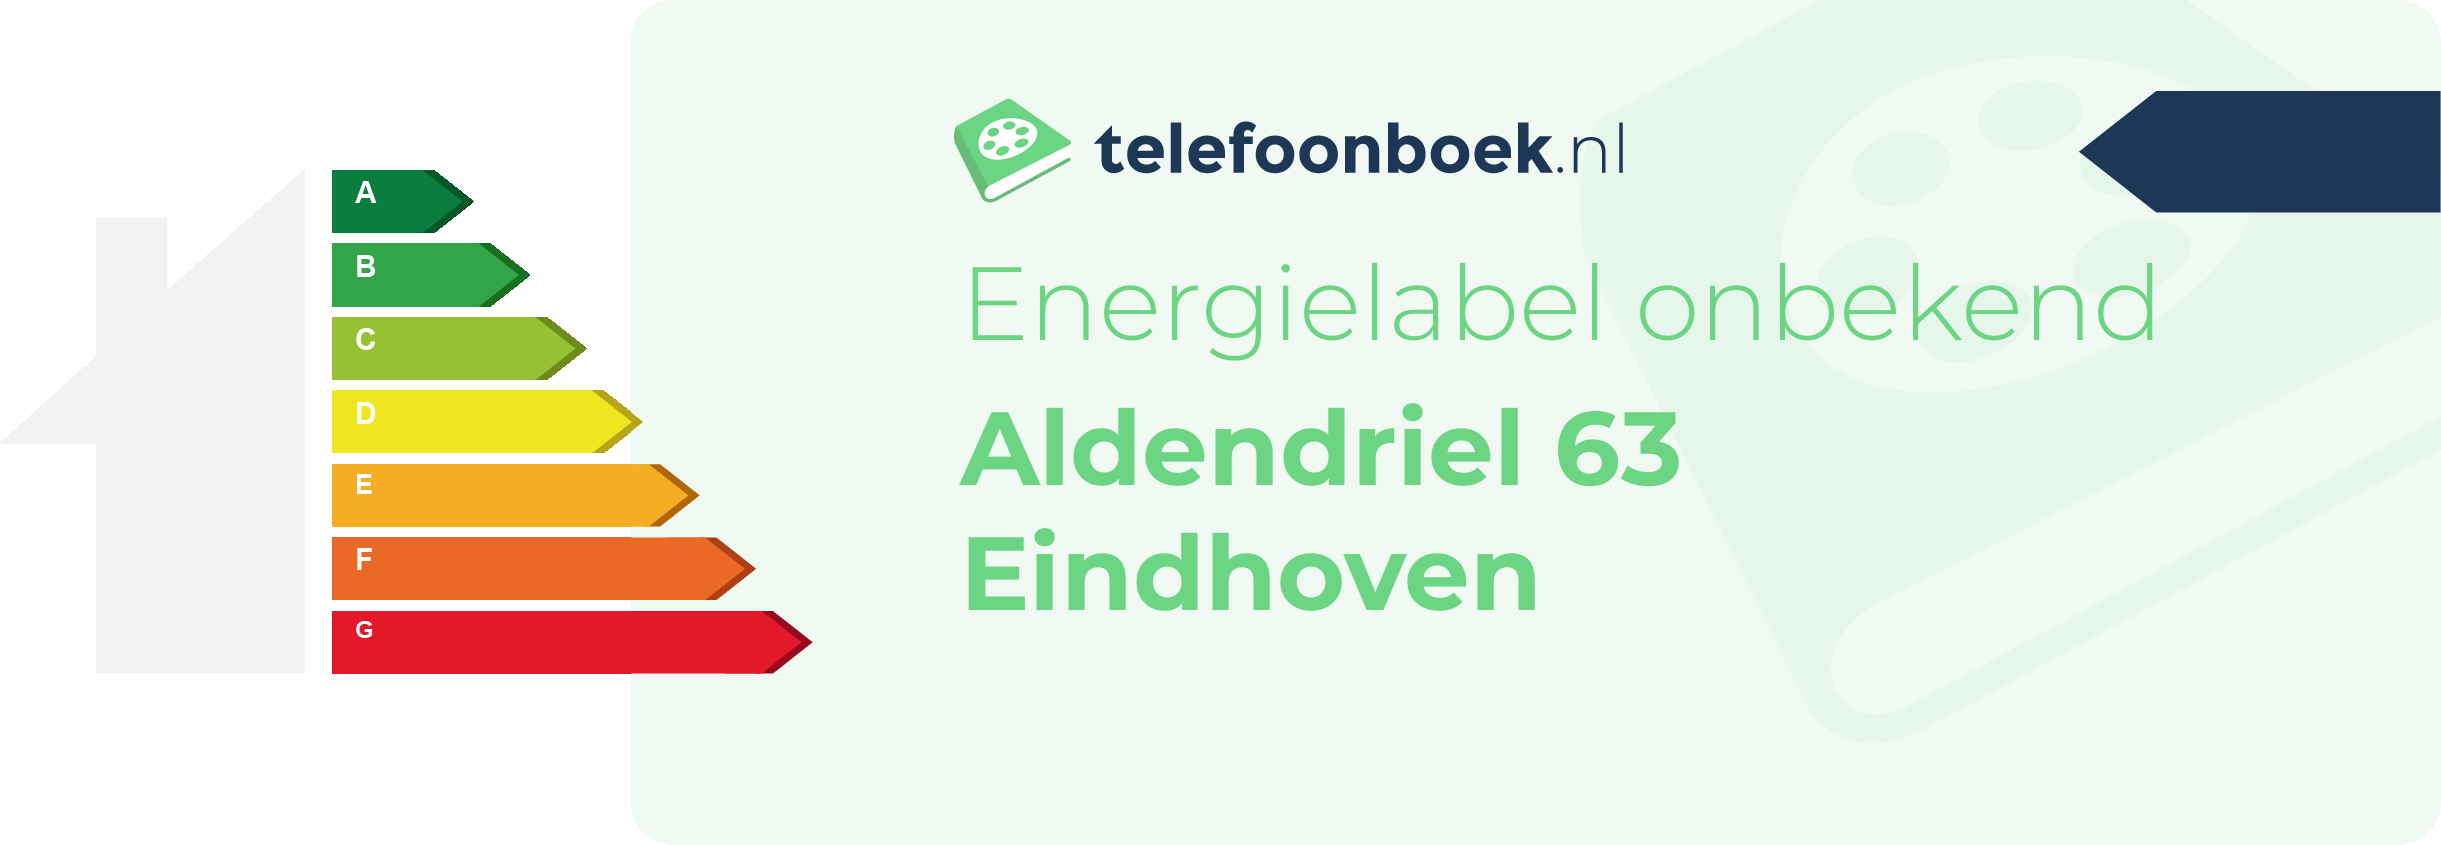 Energielabel Aldendriel 63 Eindhoven